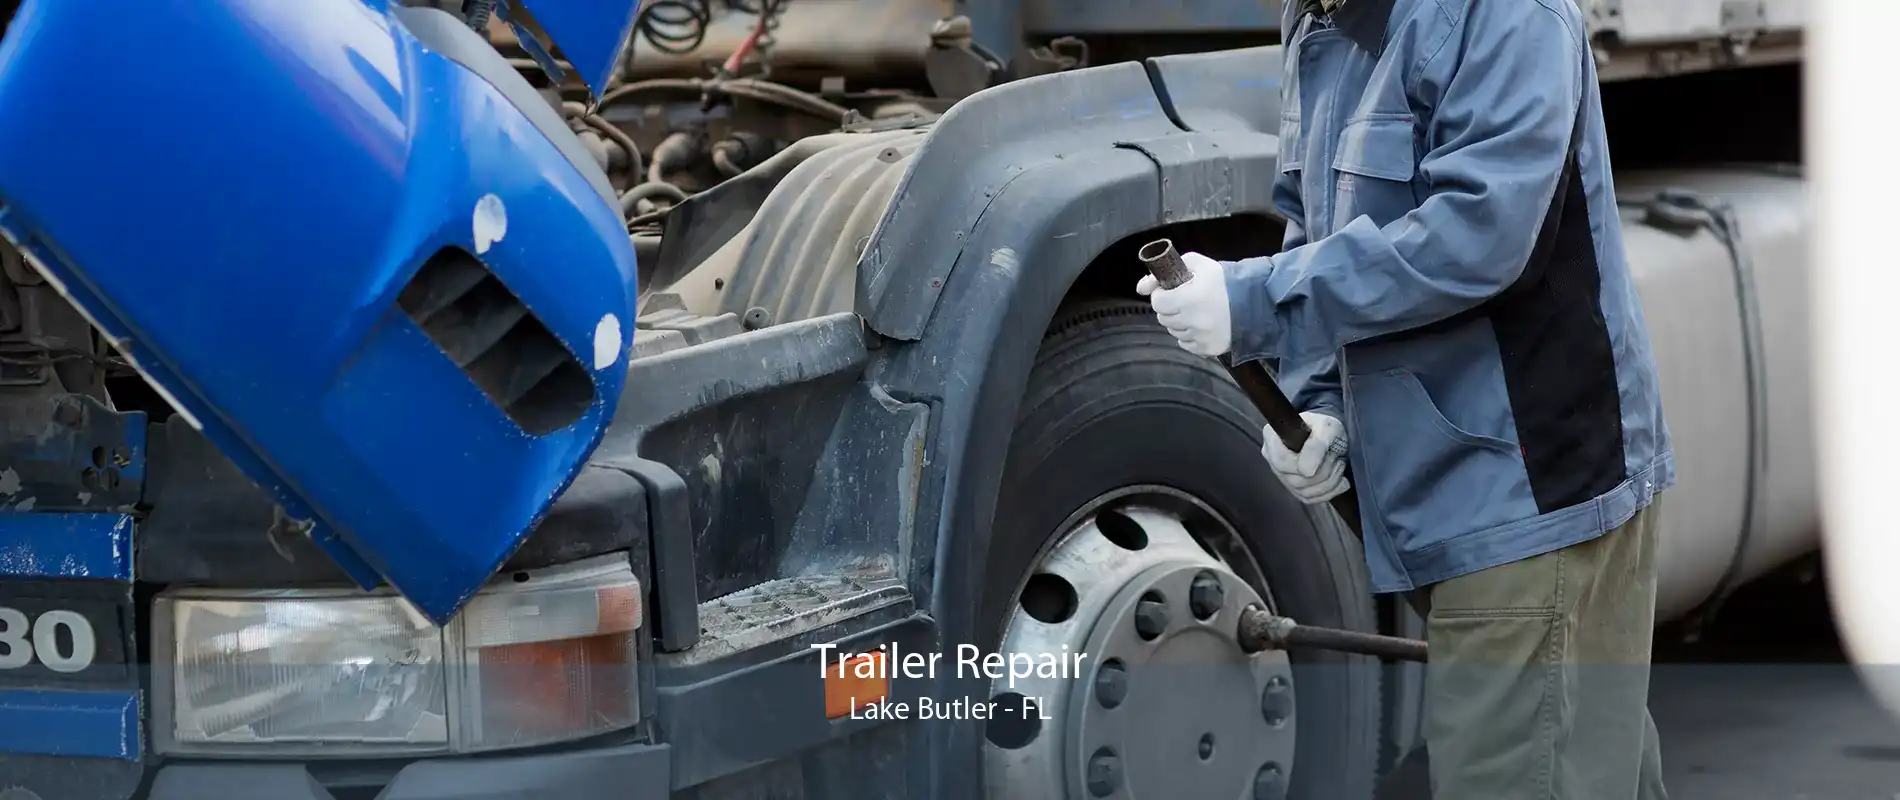 Trailer Repair Lake Butler - FL